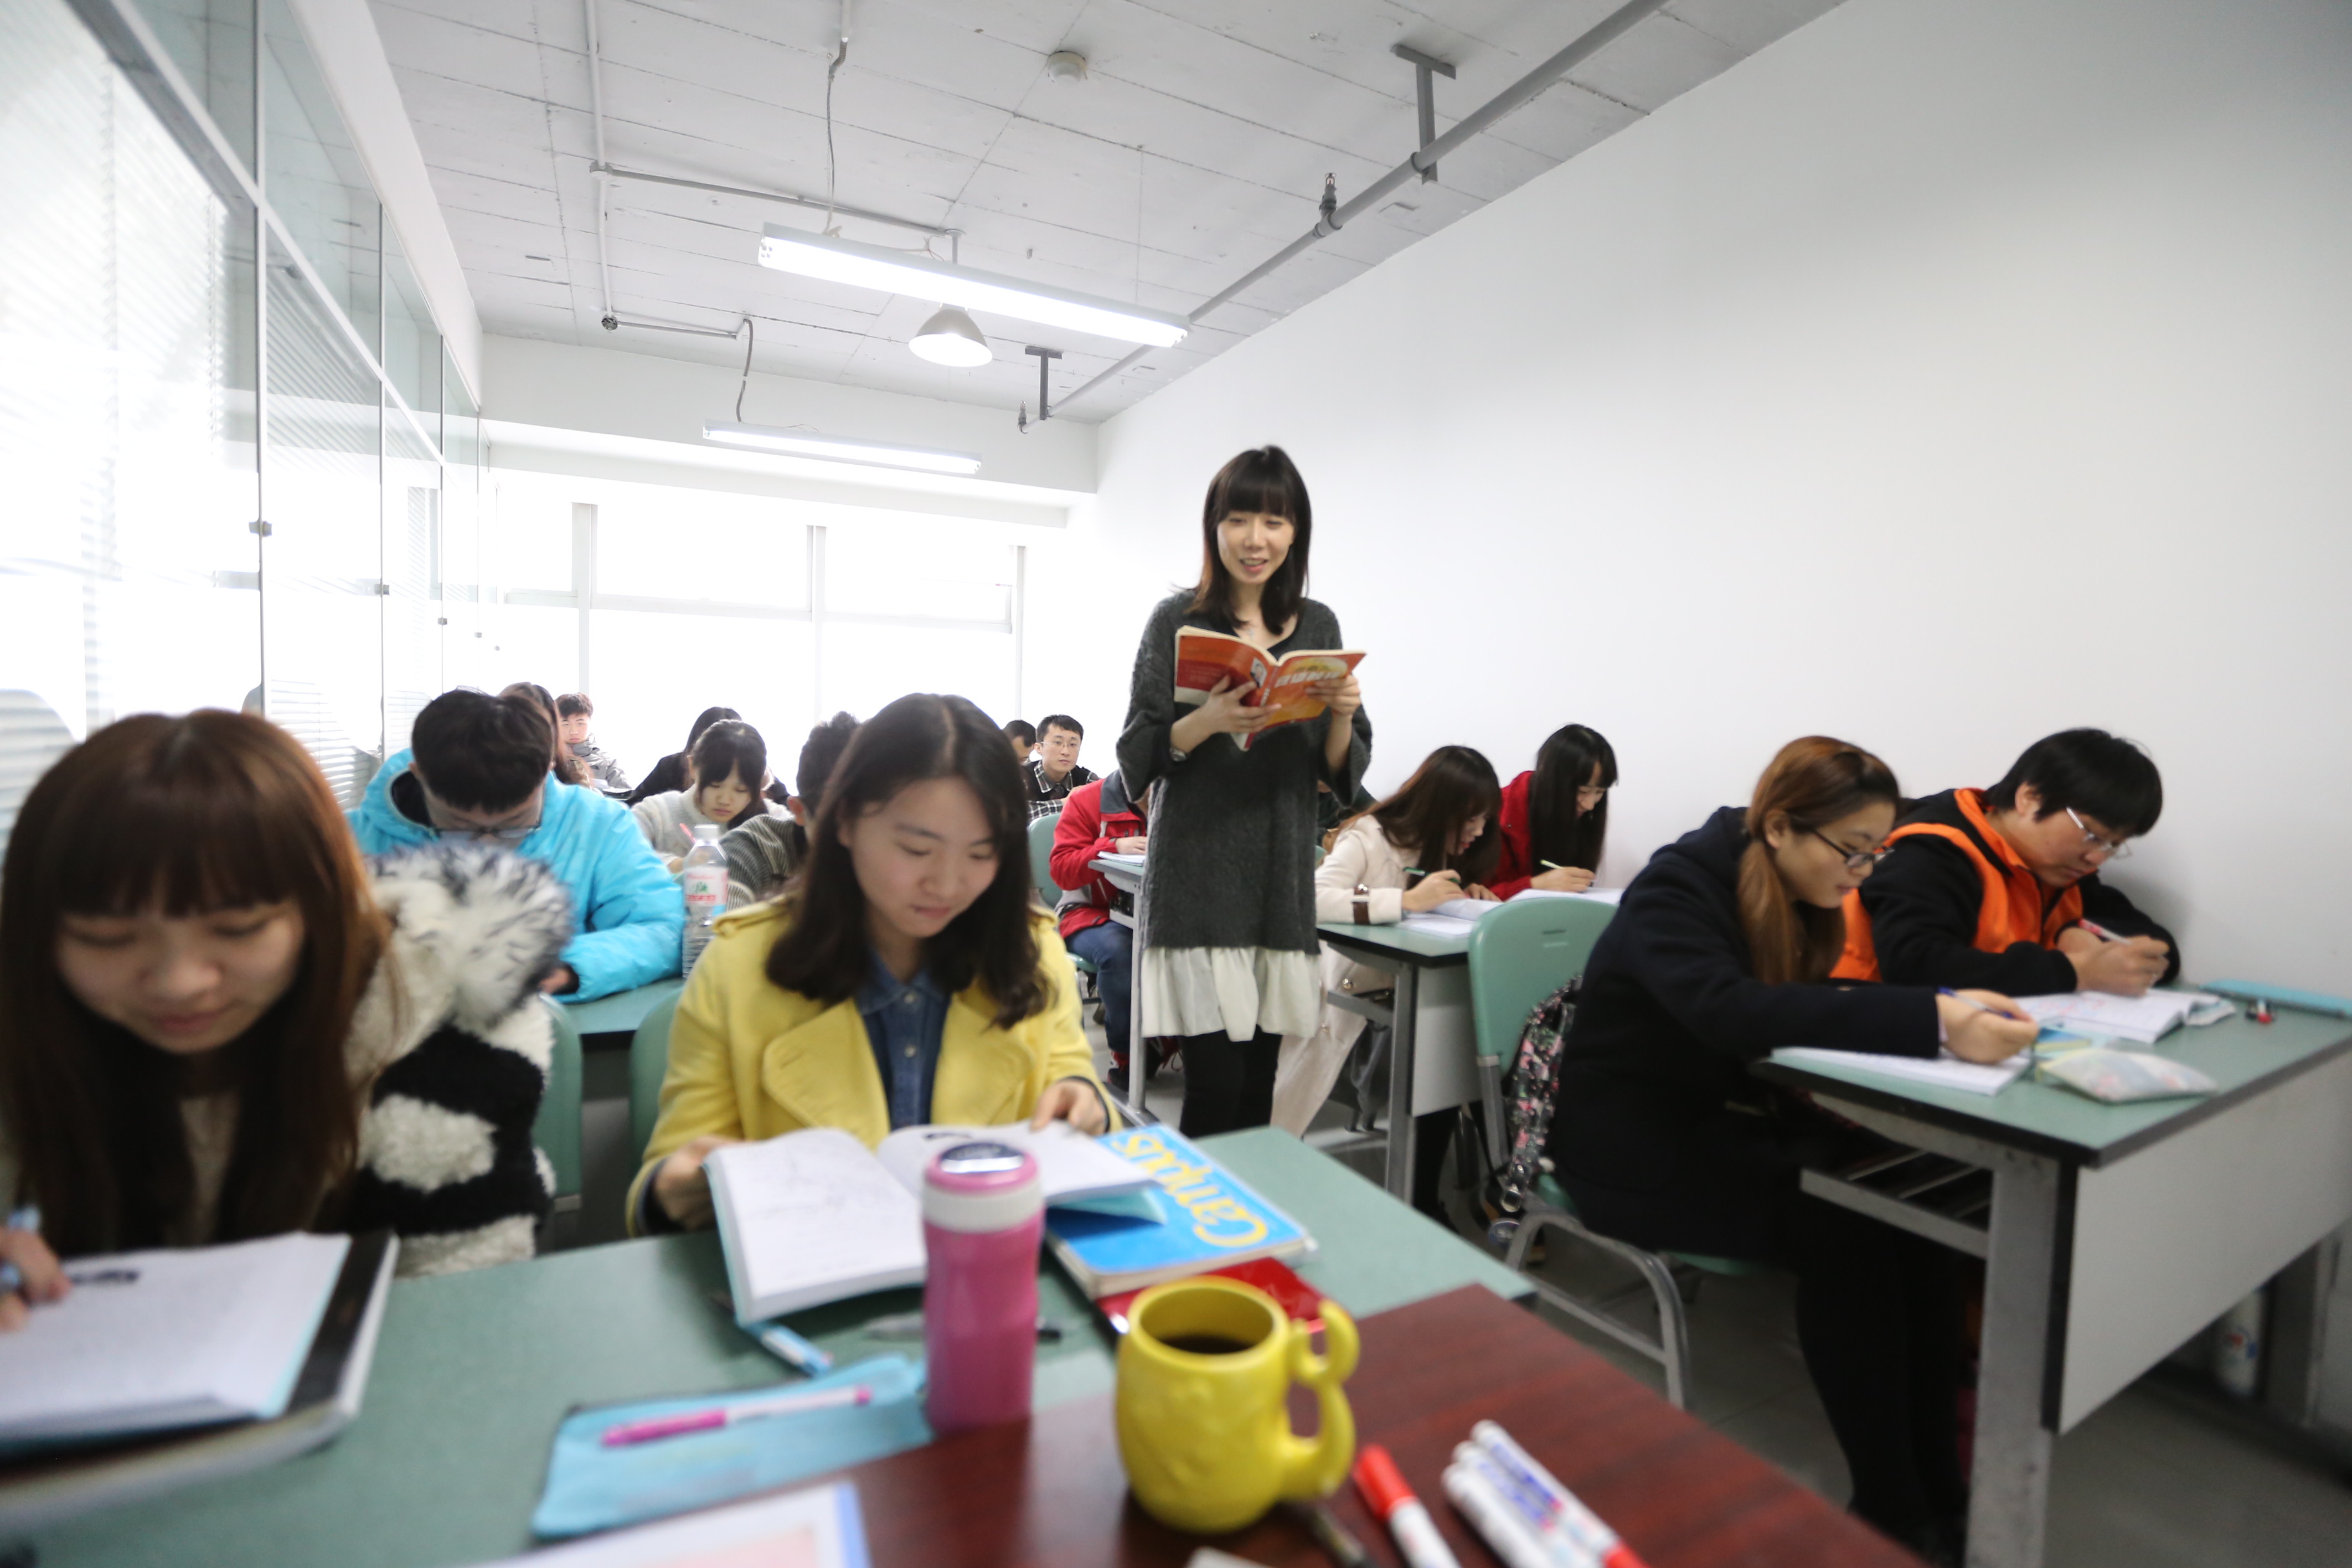 青岛亚联新环球对外汉语培训学校